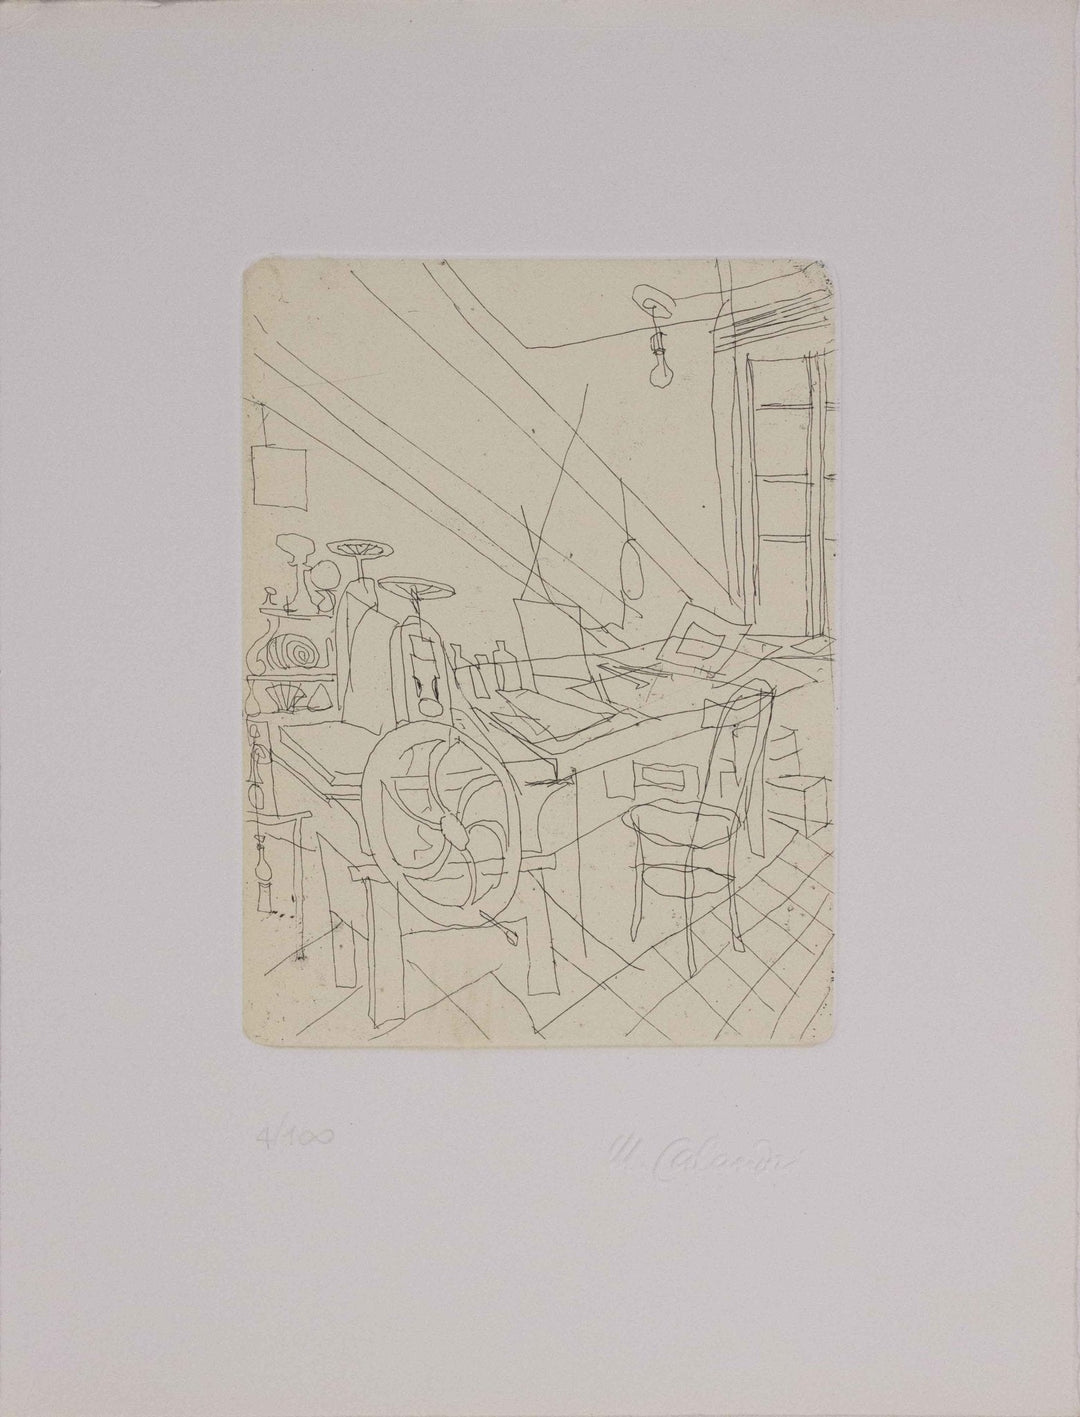 CALANDRI Mario, Lo studio dell'artista, 1951, Incisione originale firmata - EmporiumArt